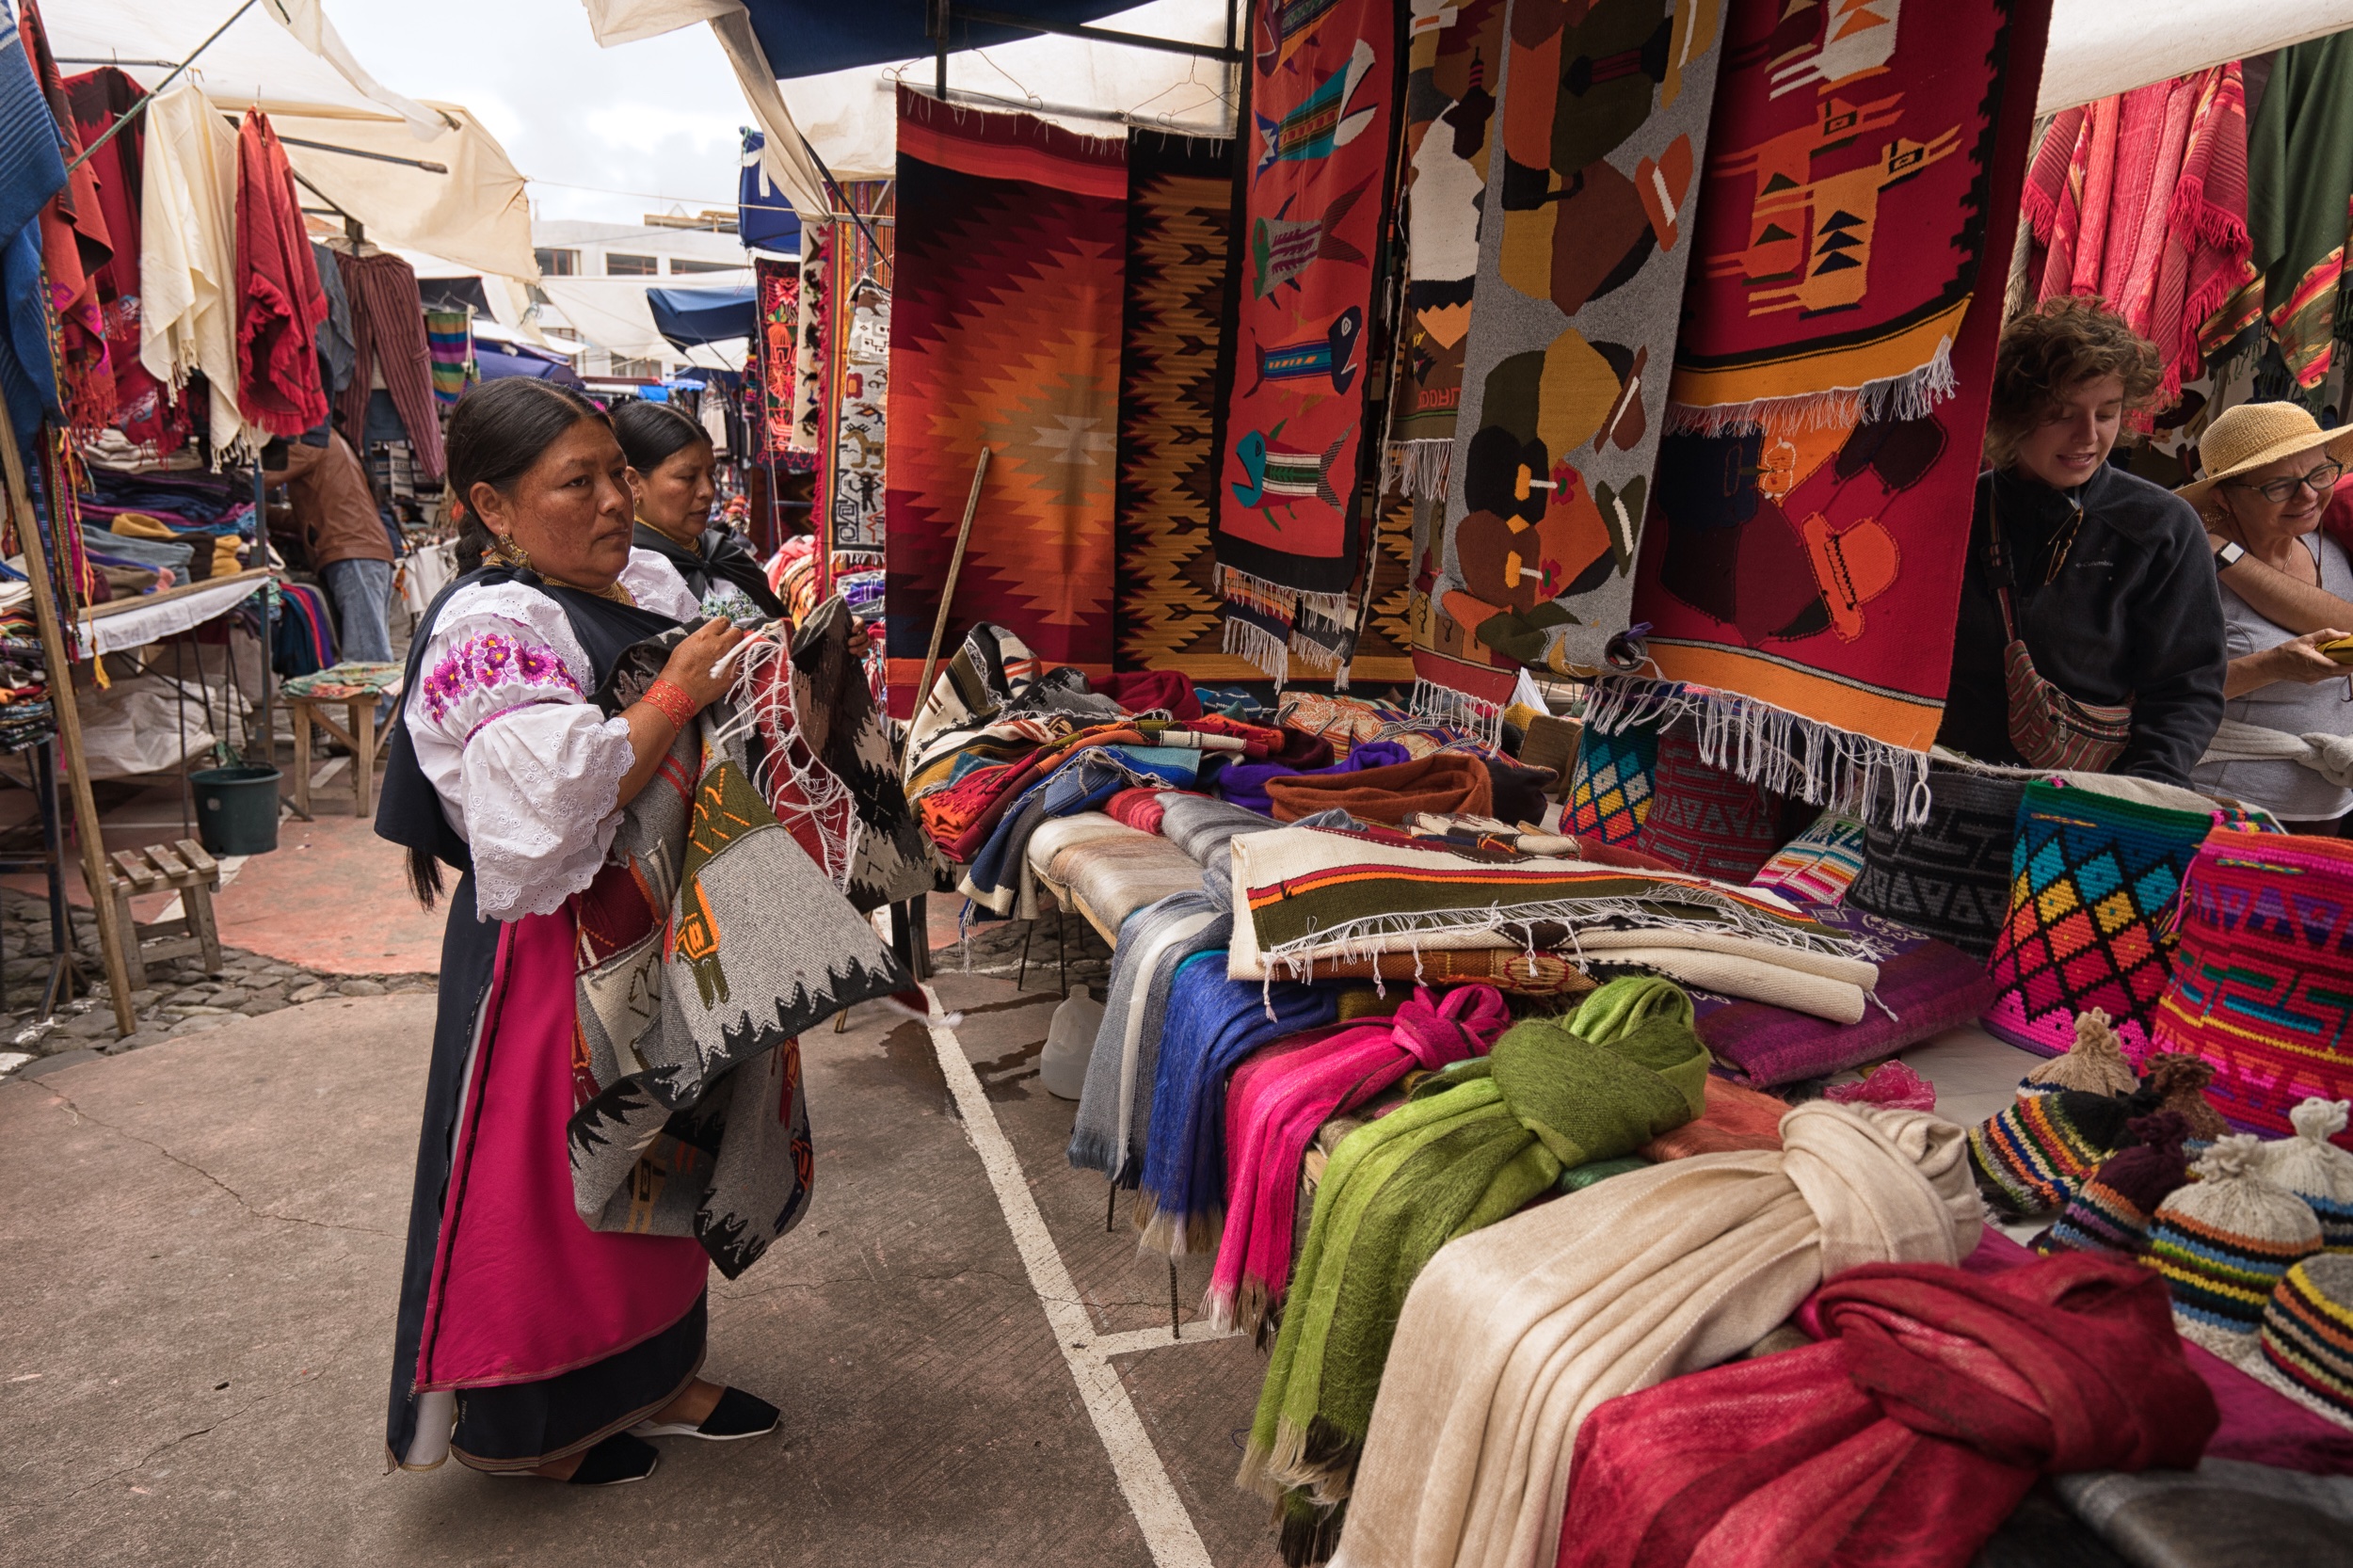 2) Otavalo Indigenous Market: 